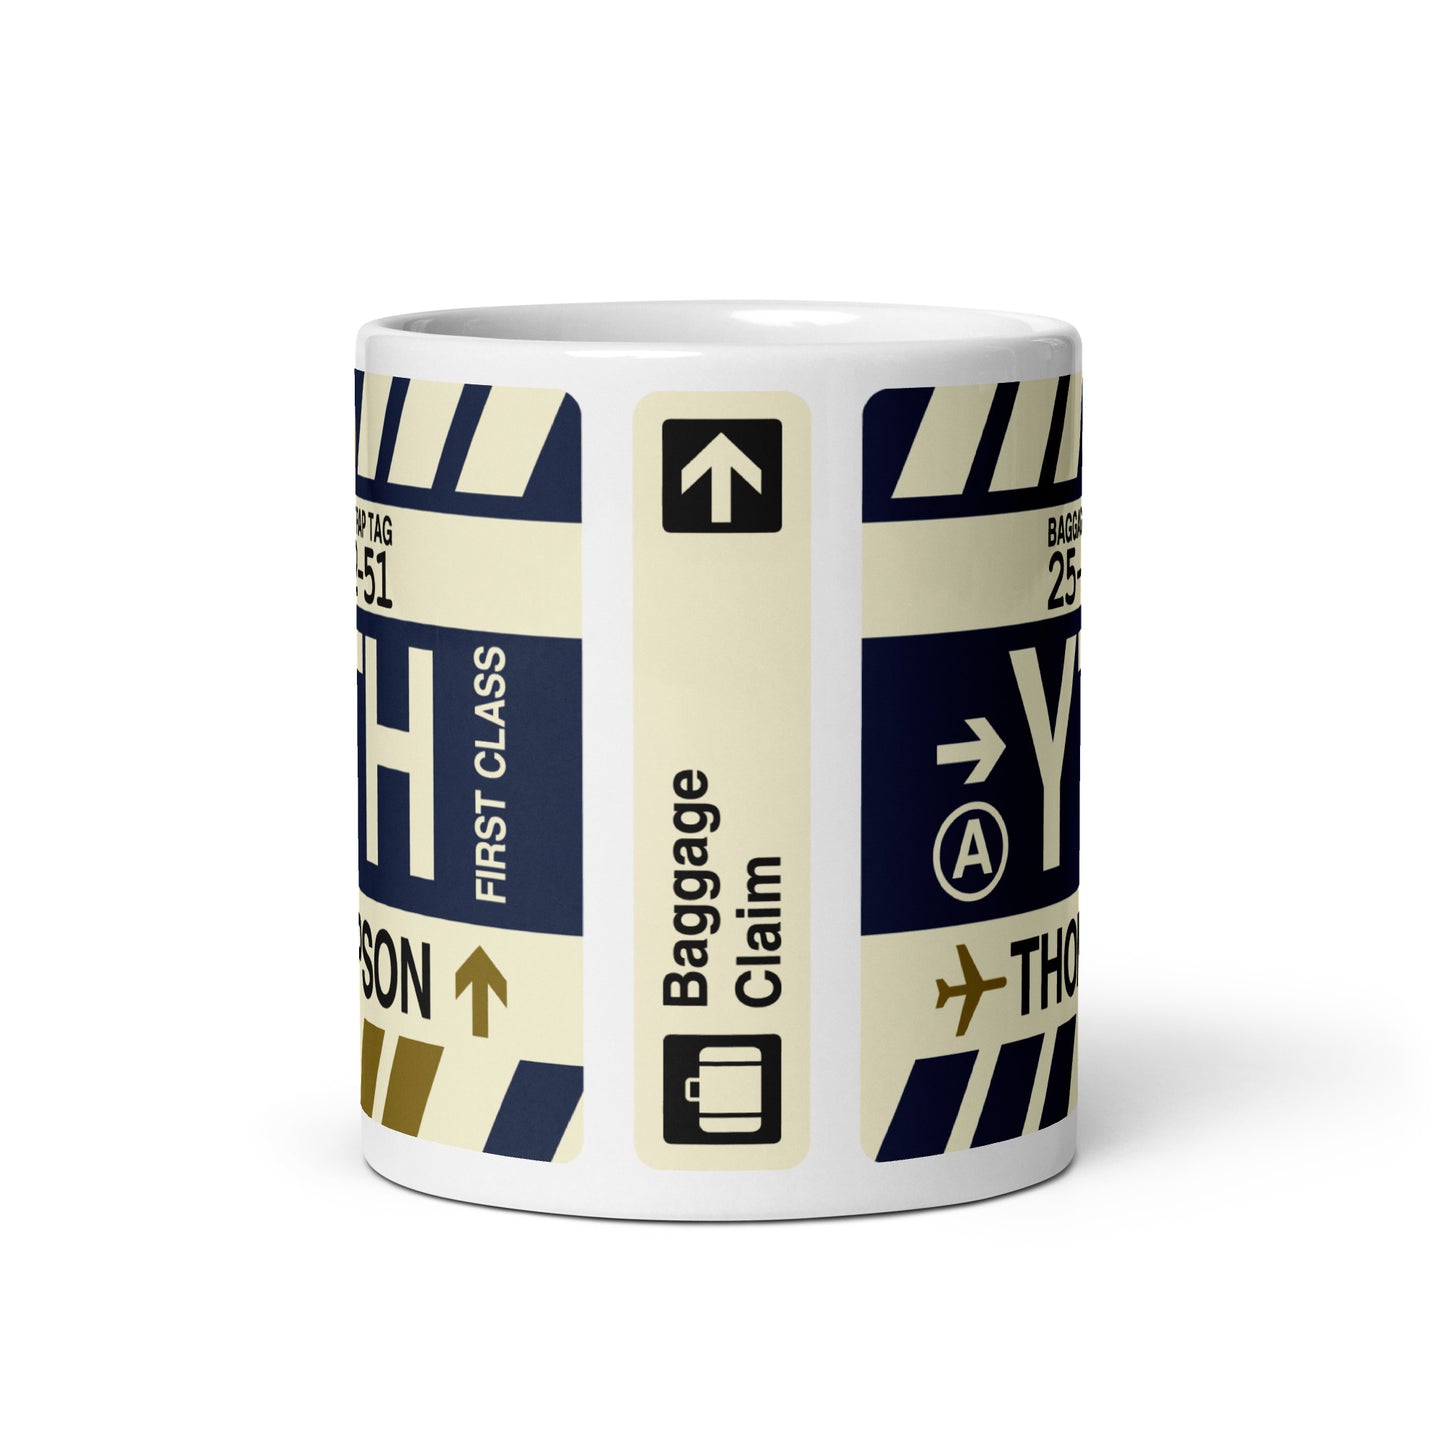 Travel Gift Coffee Mug • YTH Thompson • YHM Designs - Image 02